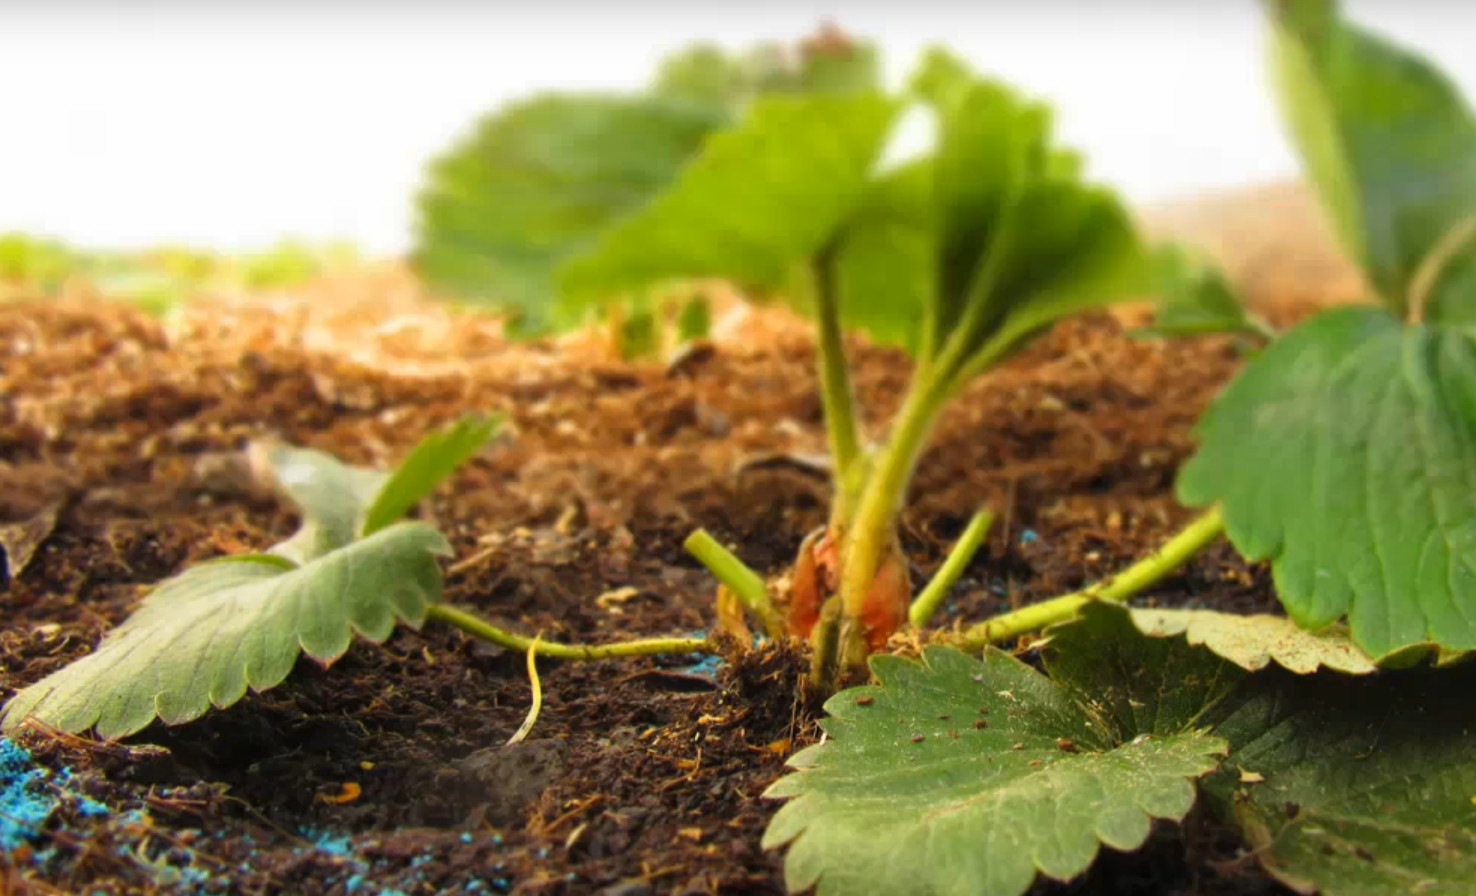 Как обработать клубнику весной? Обработка от вредителей и болезней, удобрения для хорошего урожая